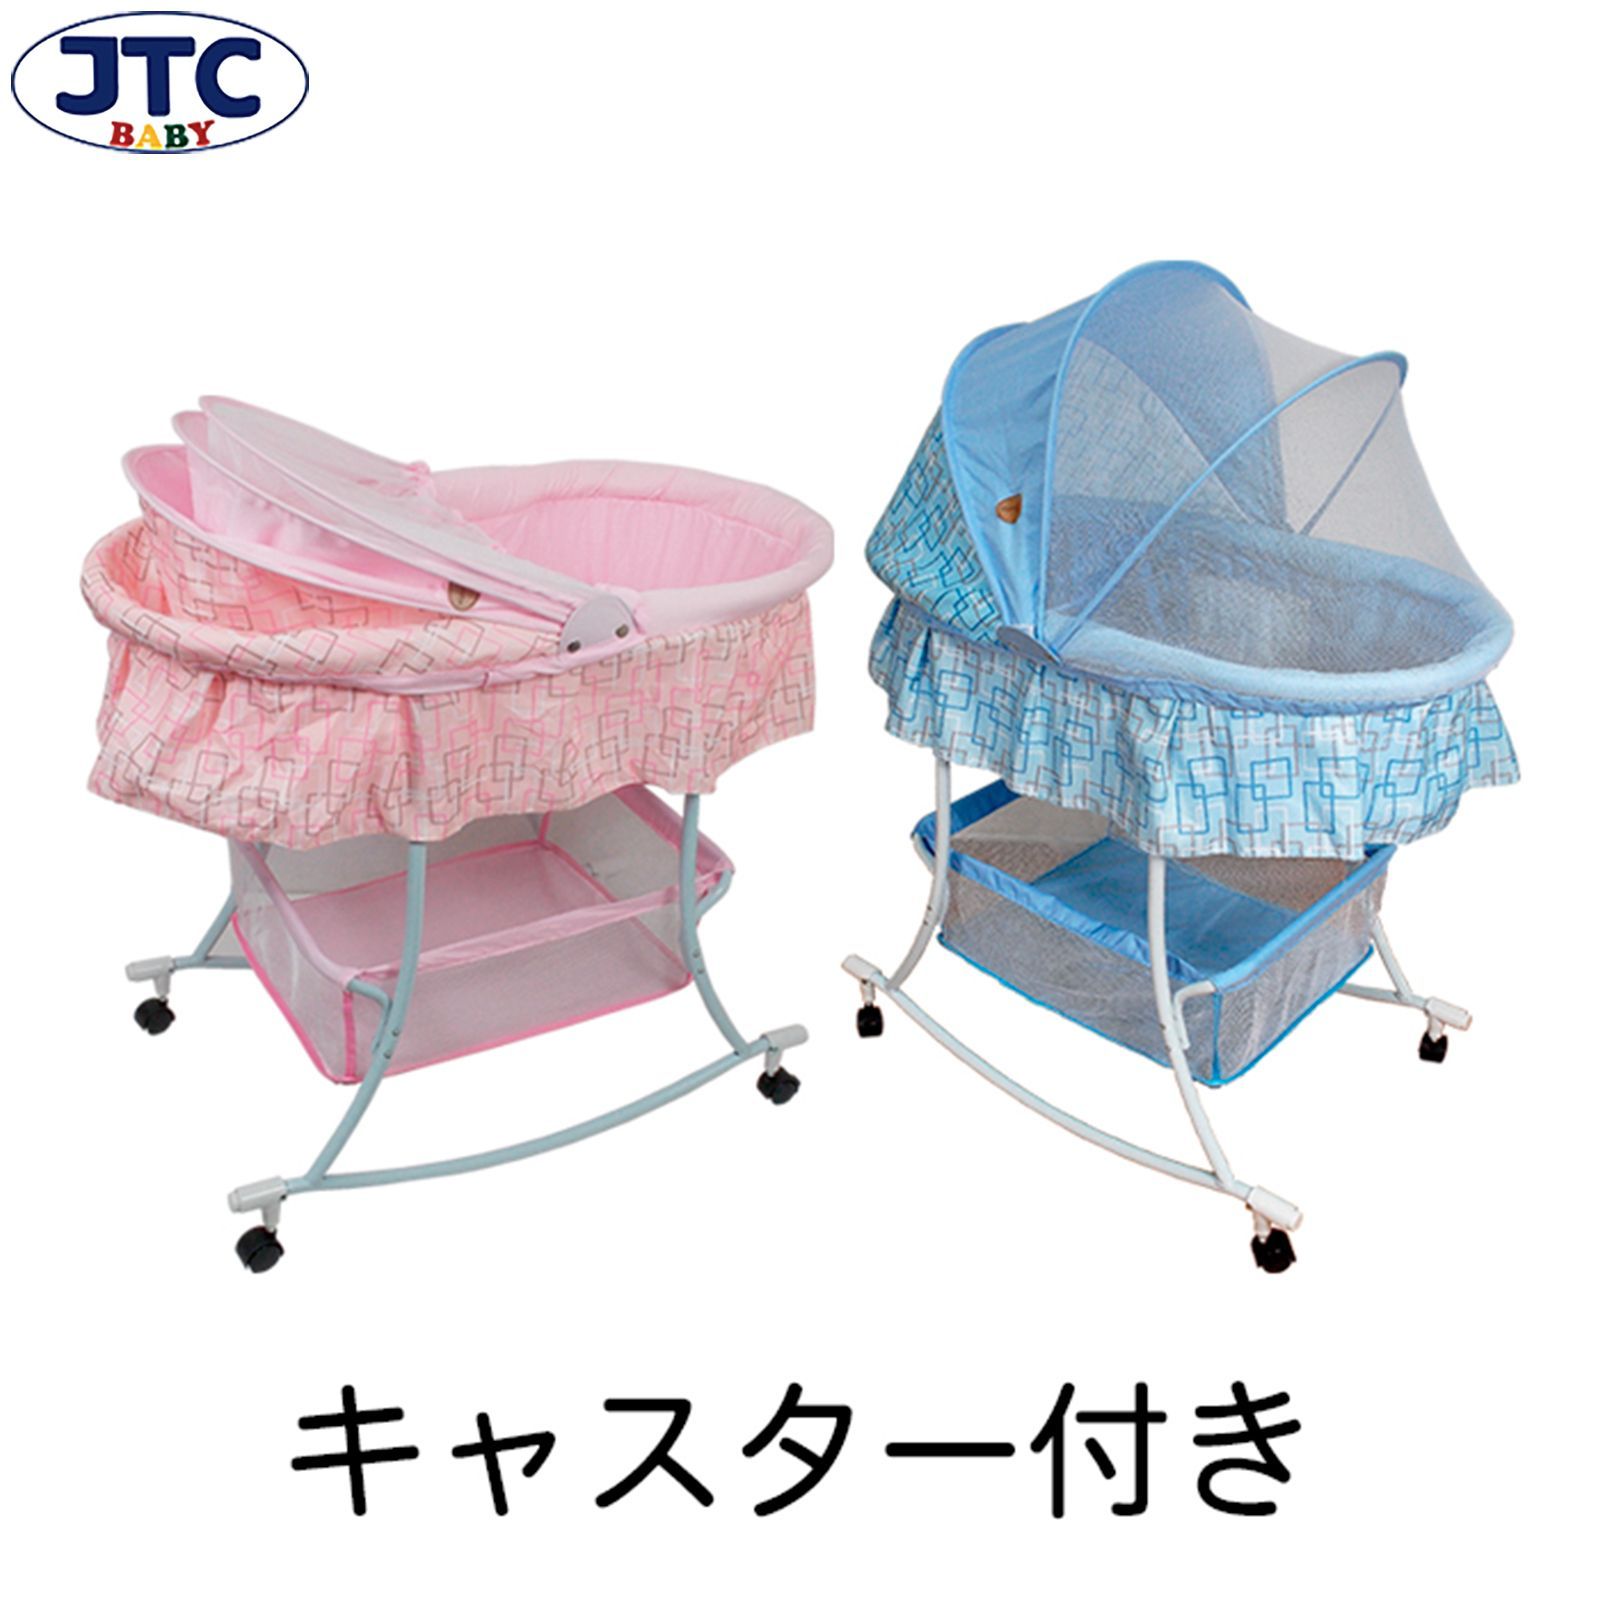 JTC baby ゆりかご 蚊帳付 シンプルレトロ デザイン-0